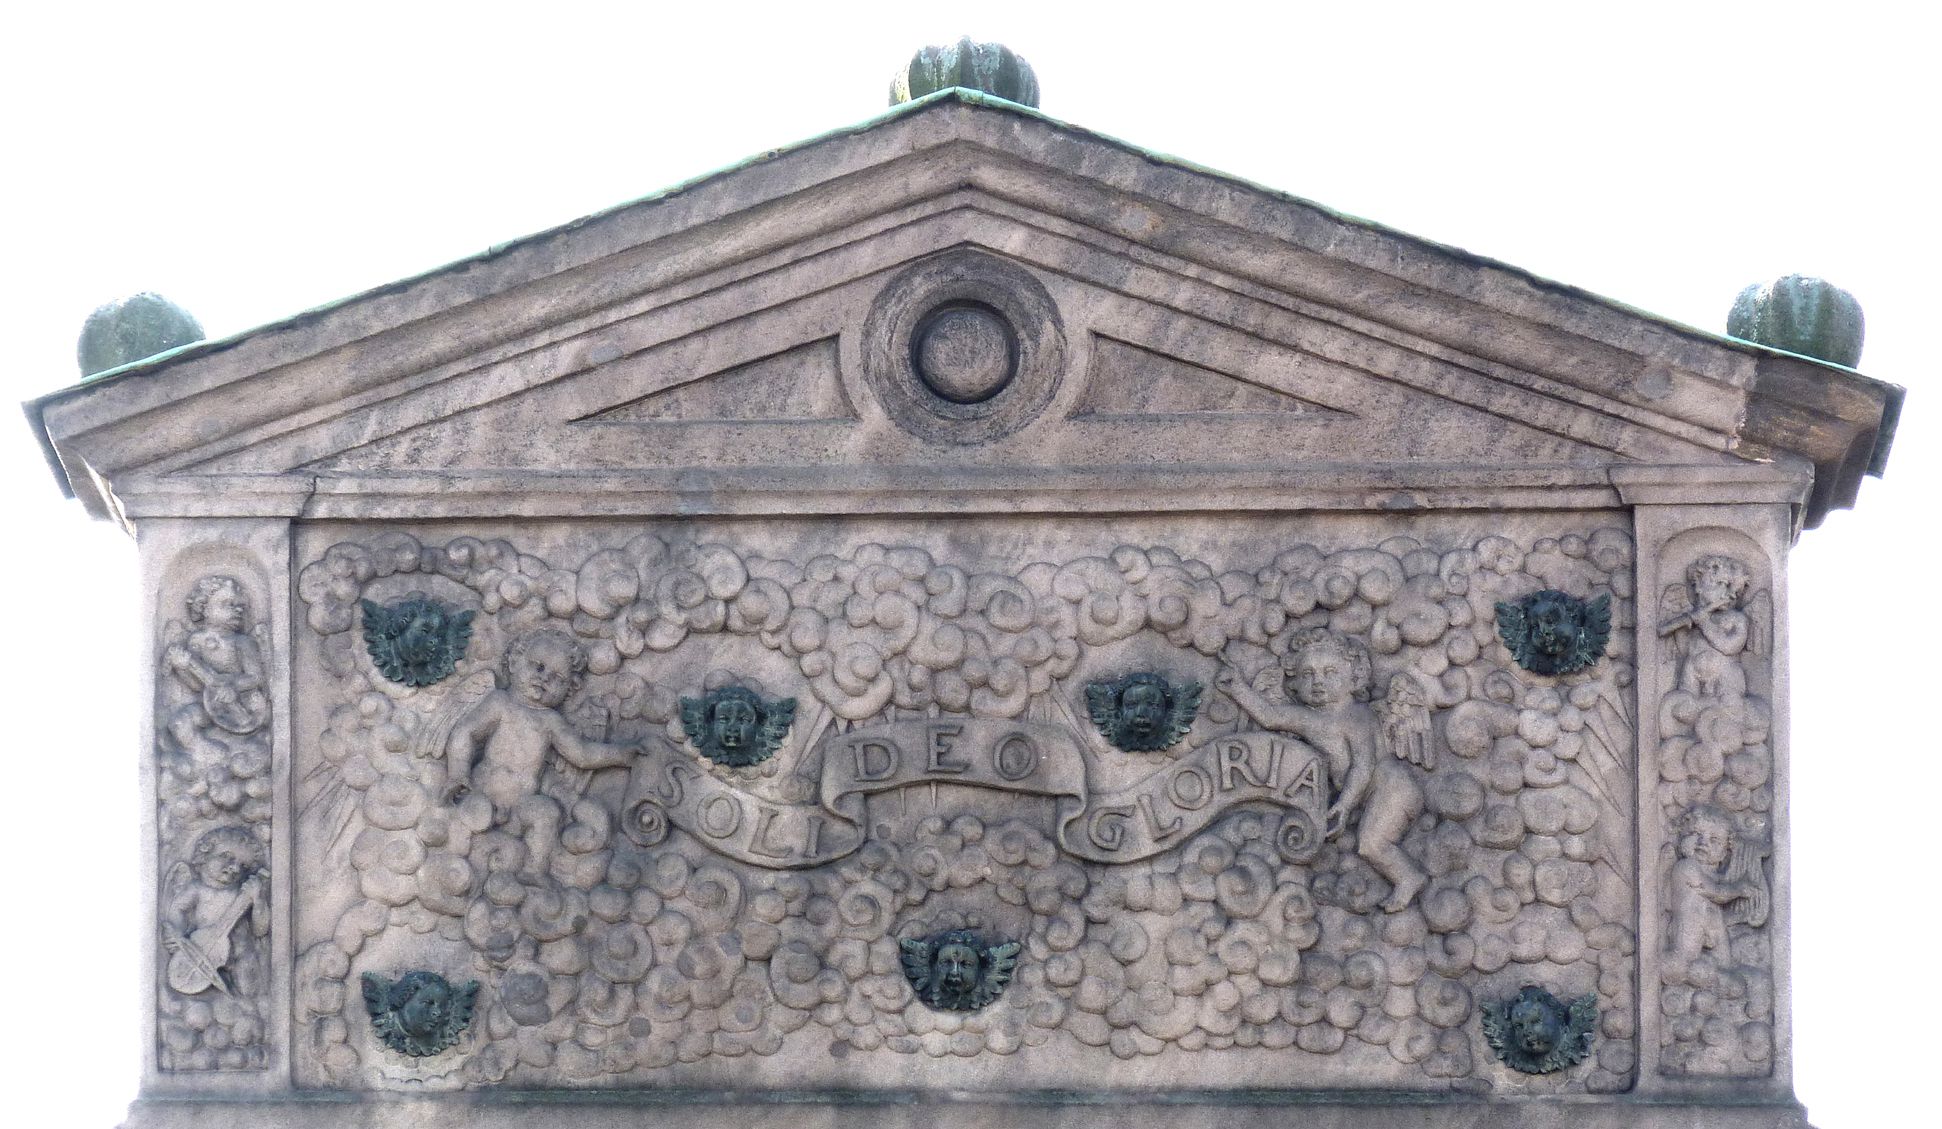 Gedächtnisstein des Wolfgang Müntzer Rückansicht, Ädikula mit bronzenen Engelsköpfen und Spruchband